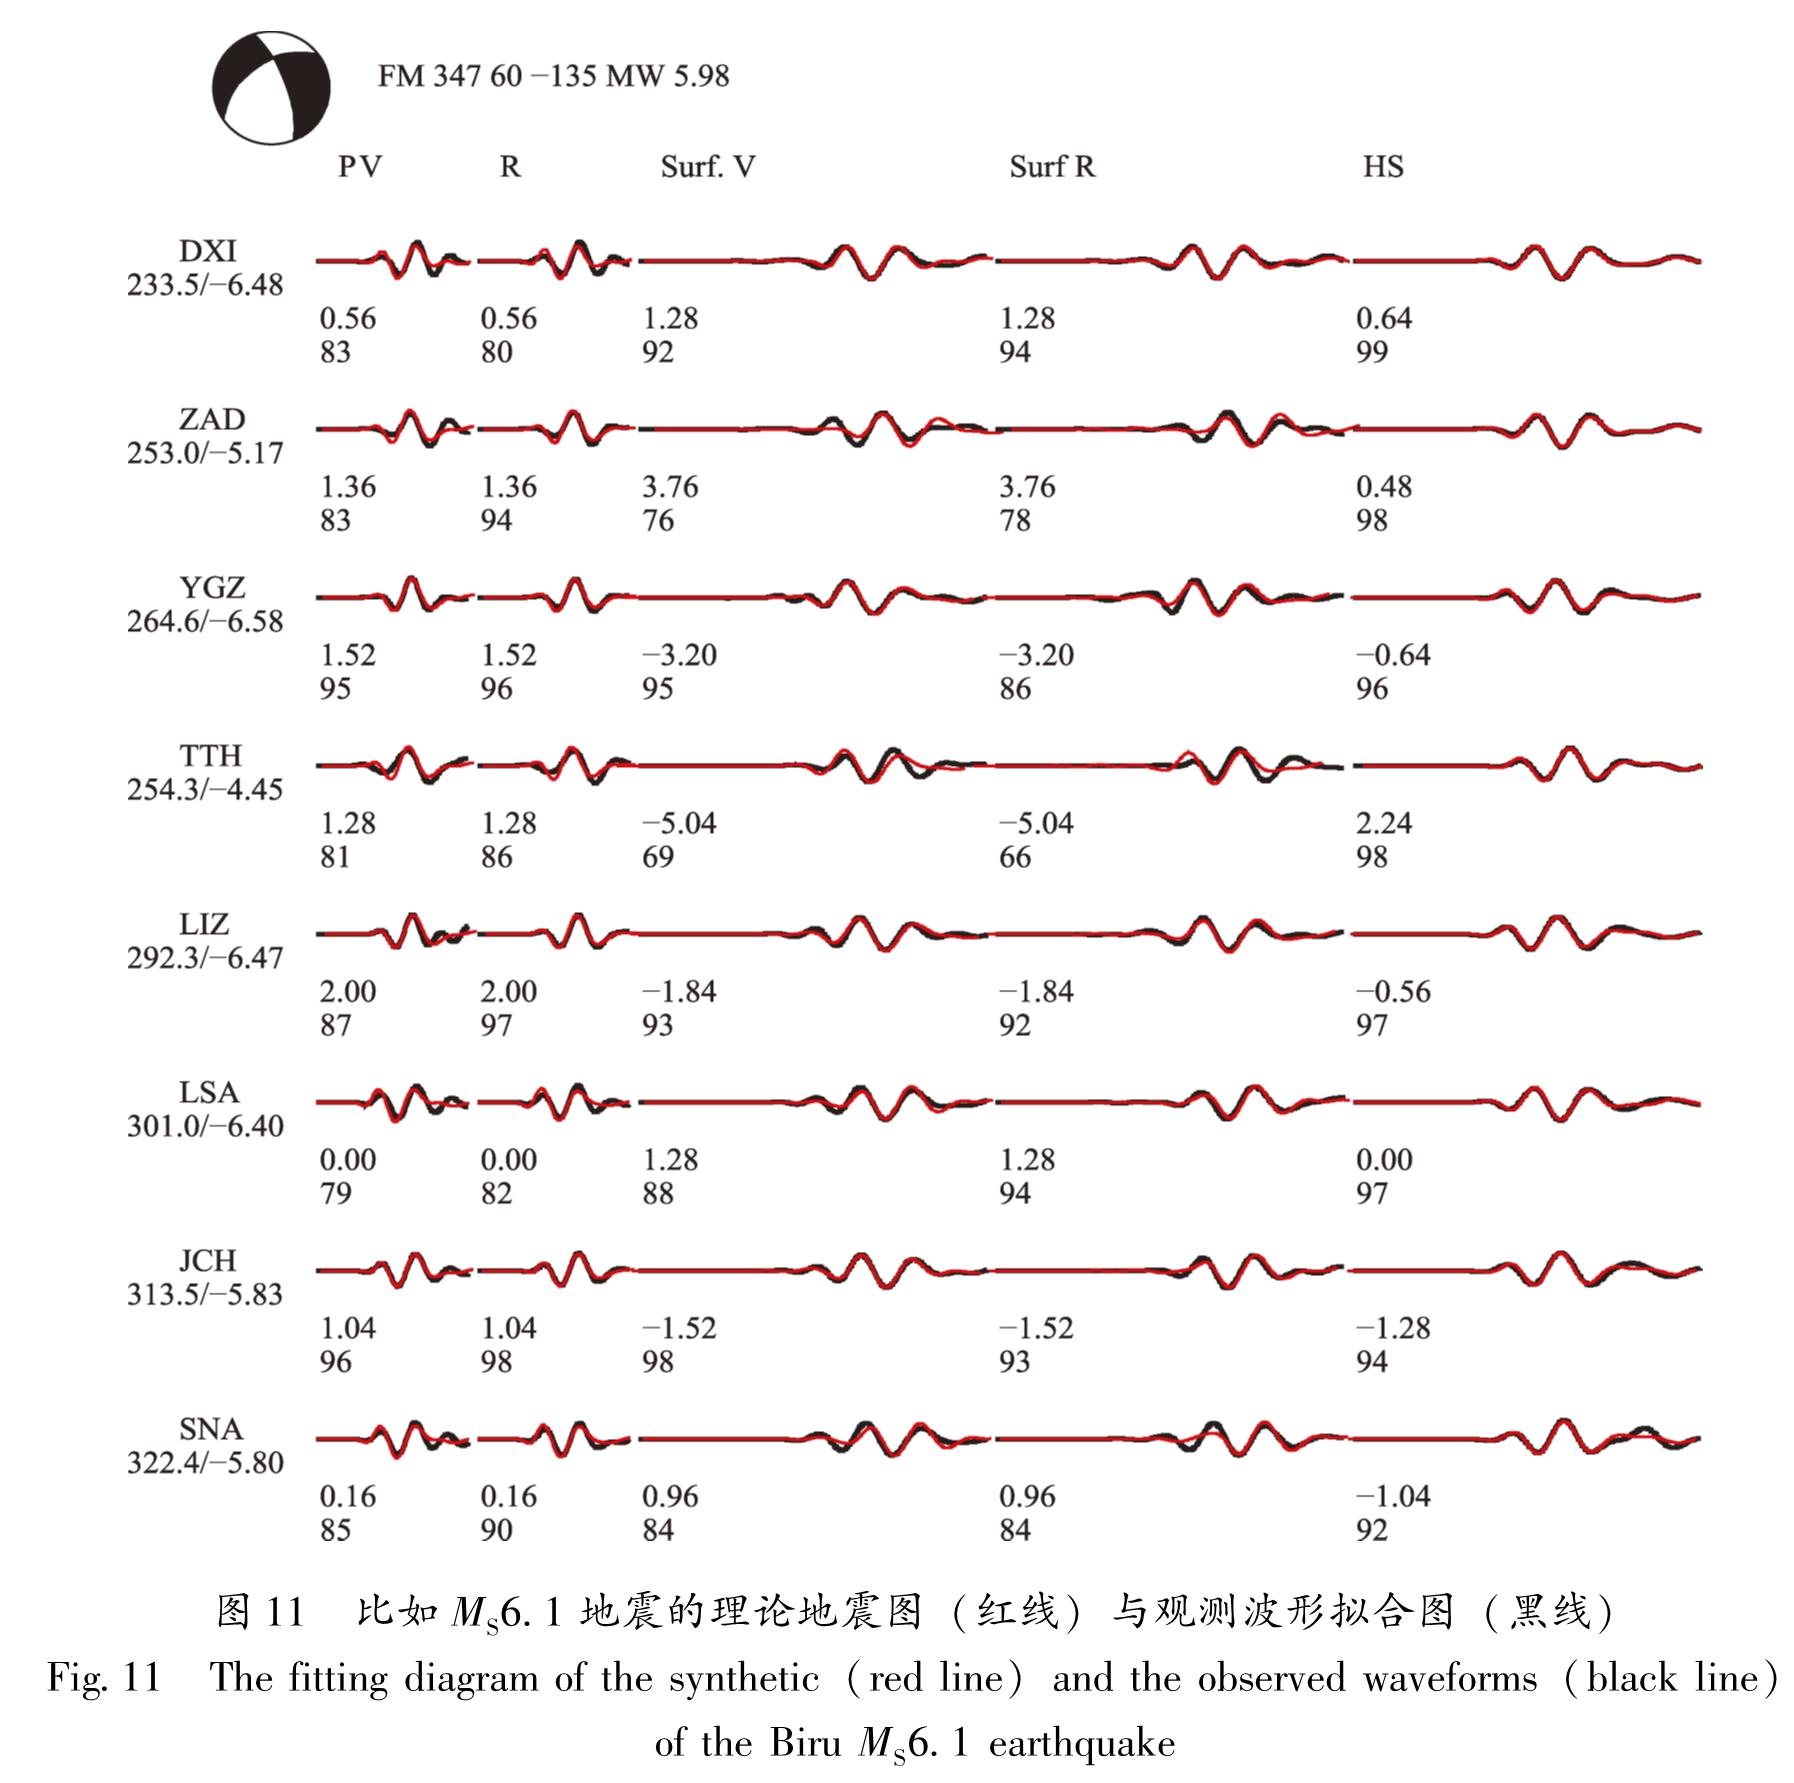 图11 比如MS6.1地震的理论地震图(红线)与观测波形拟合图(黑线)<br/>Fig.11 The fitting diagram of the synthetic(red line)and the observed waveforms(black line)of the Biru MS6.1 earthquake[HT]